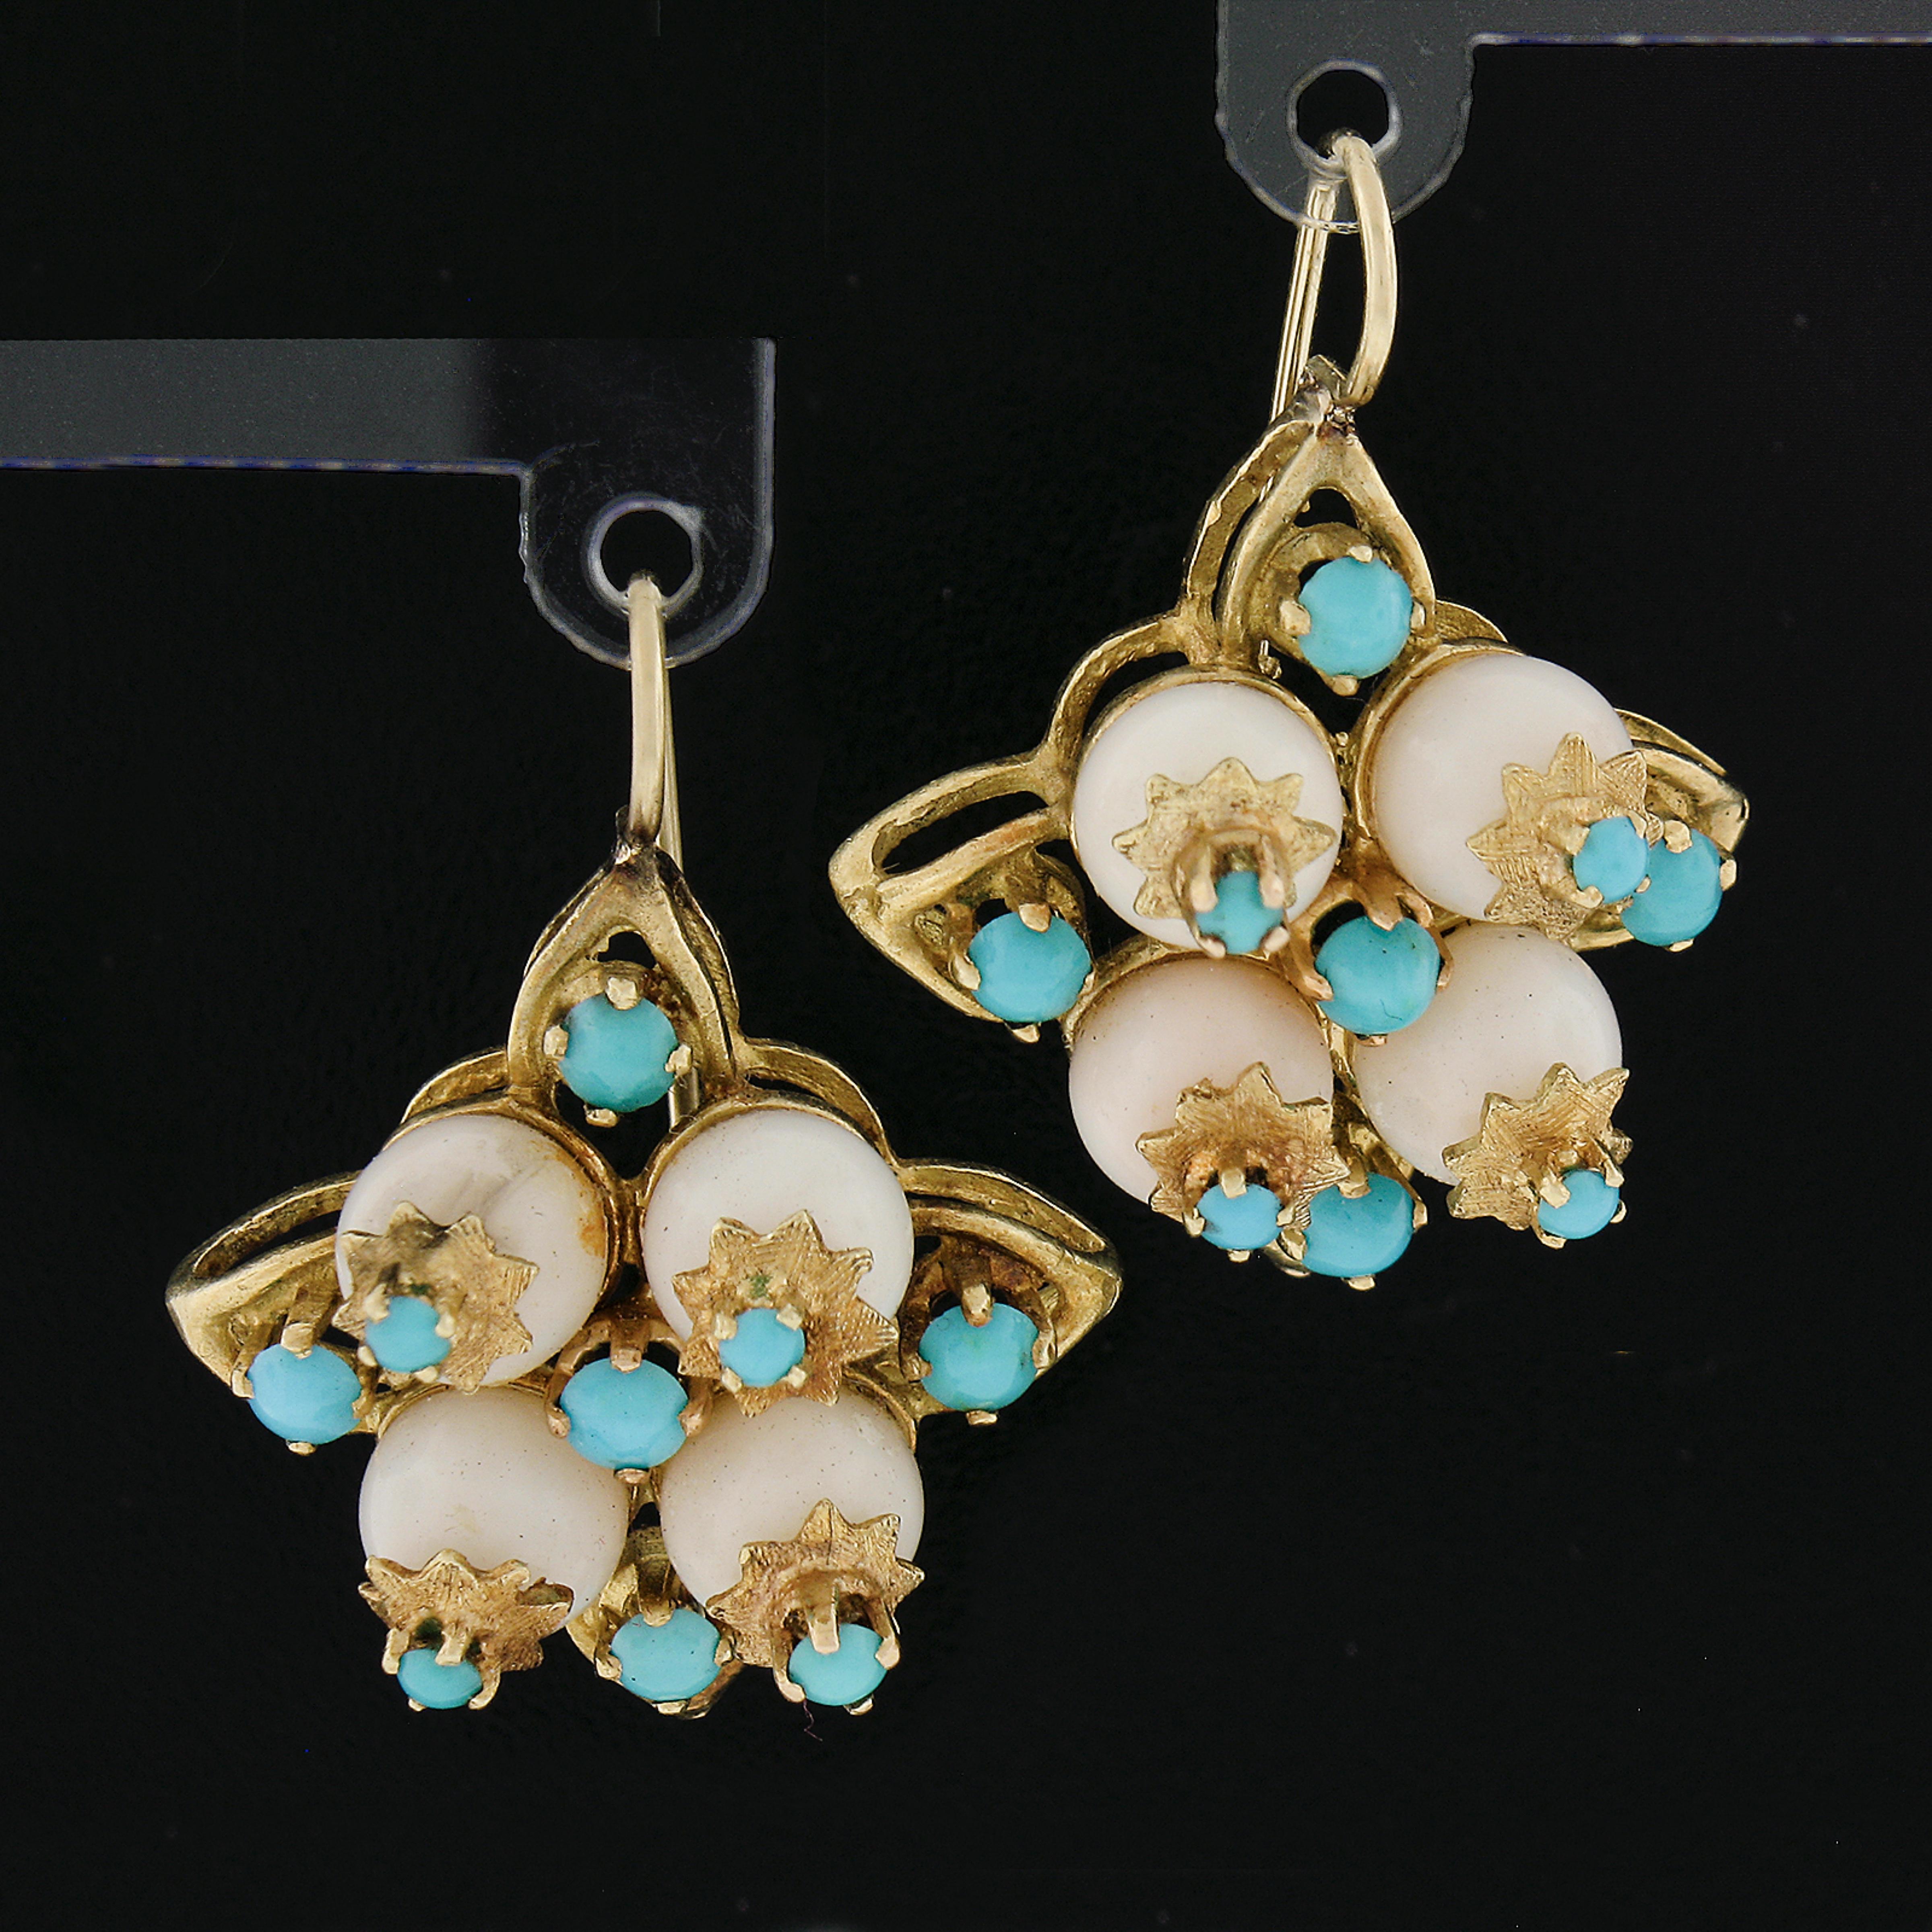 Hier haben wir ein schönes Paar Vintage Ohrringe, die in massivem 18k Gelbgold gefertigt sind. Sie verfügen jeweils über eine 8 Perlen Form Engel Haut Koralle ordentlich in einem floralen Korb-Design gesetzt. Die Korallen sind mit 16 Türkisen